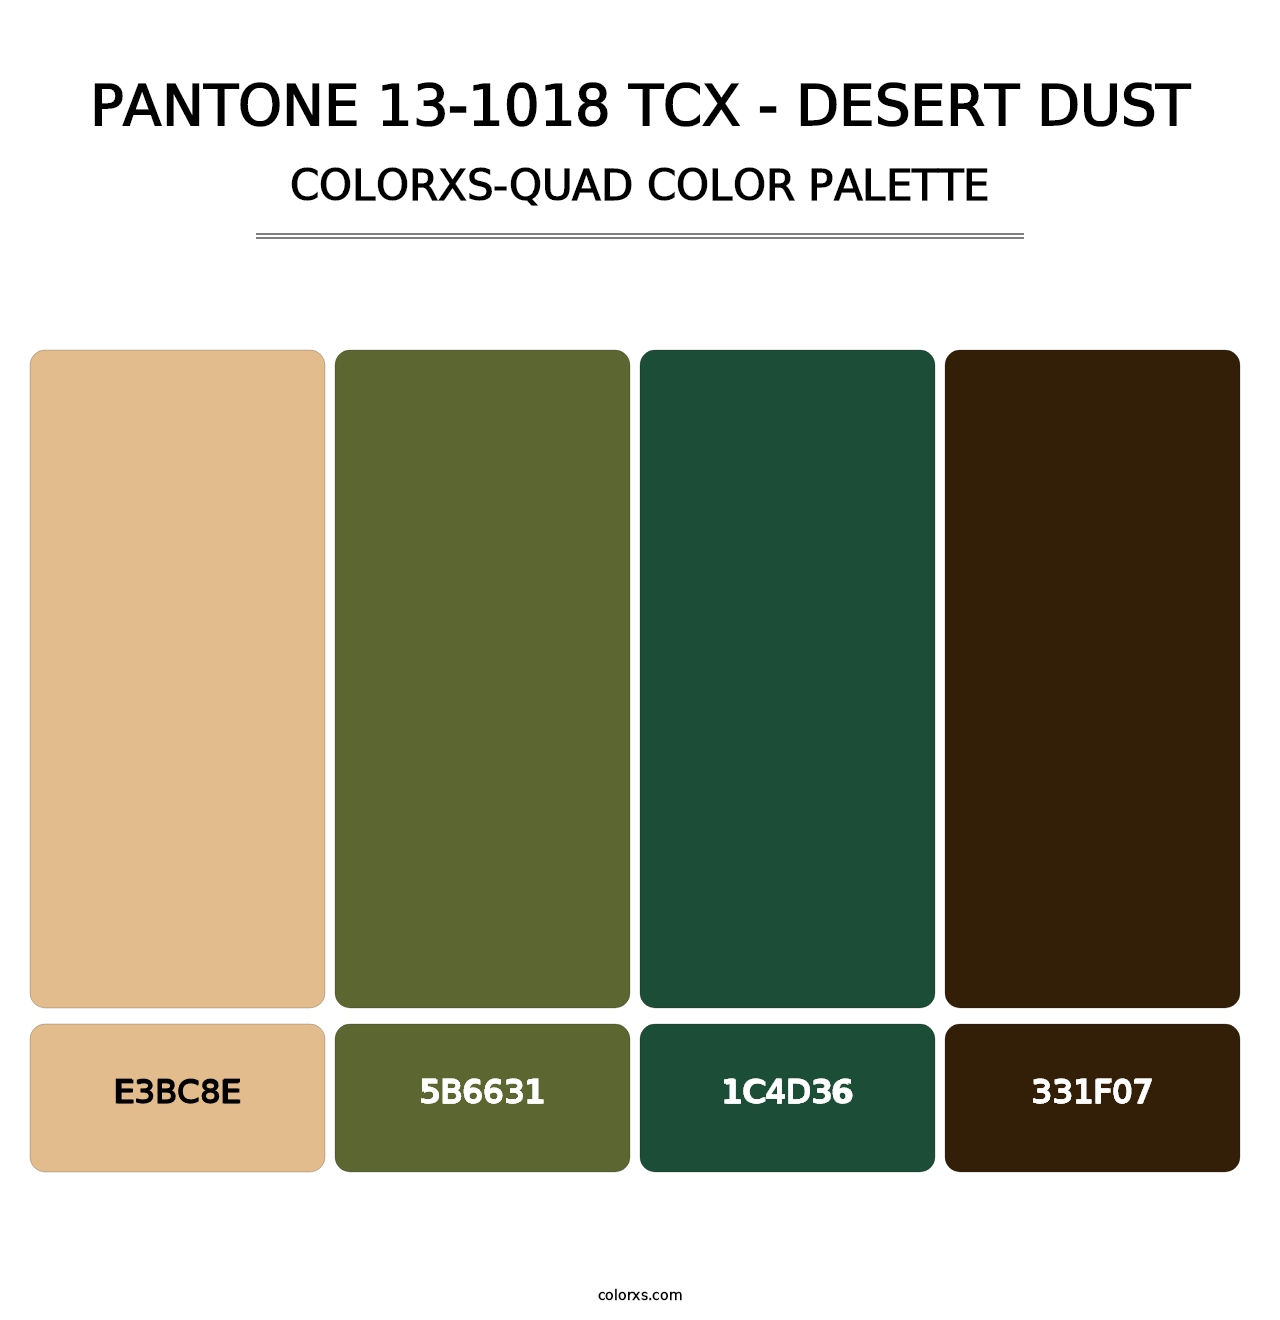 PANTONE 13-1018 TCX - Desert Dust - Colorxs Quad Palette